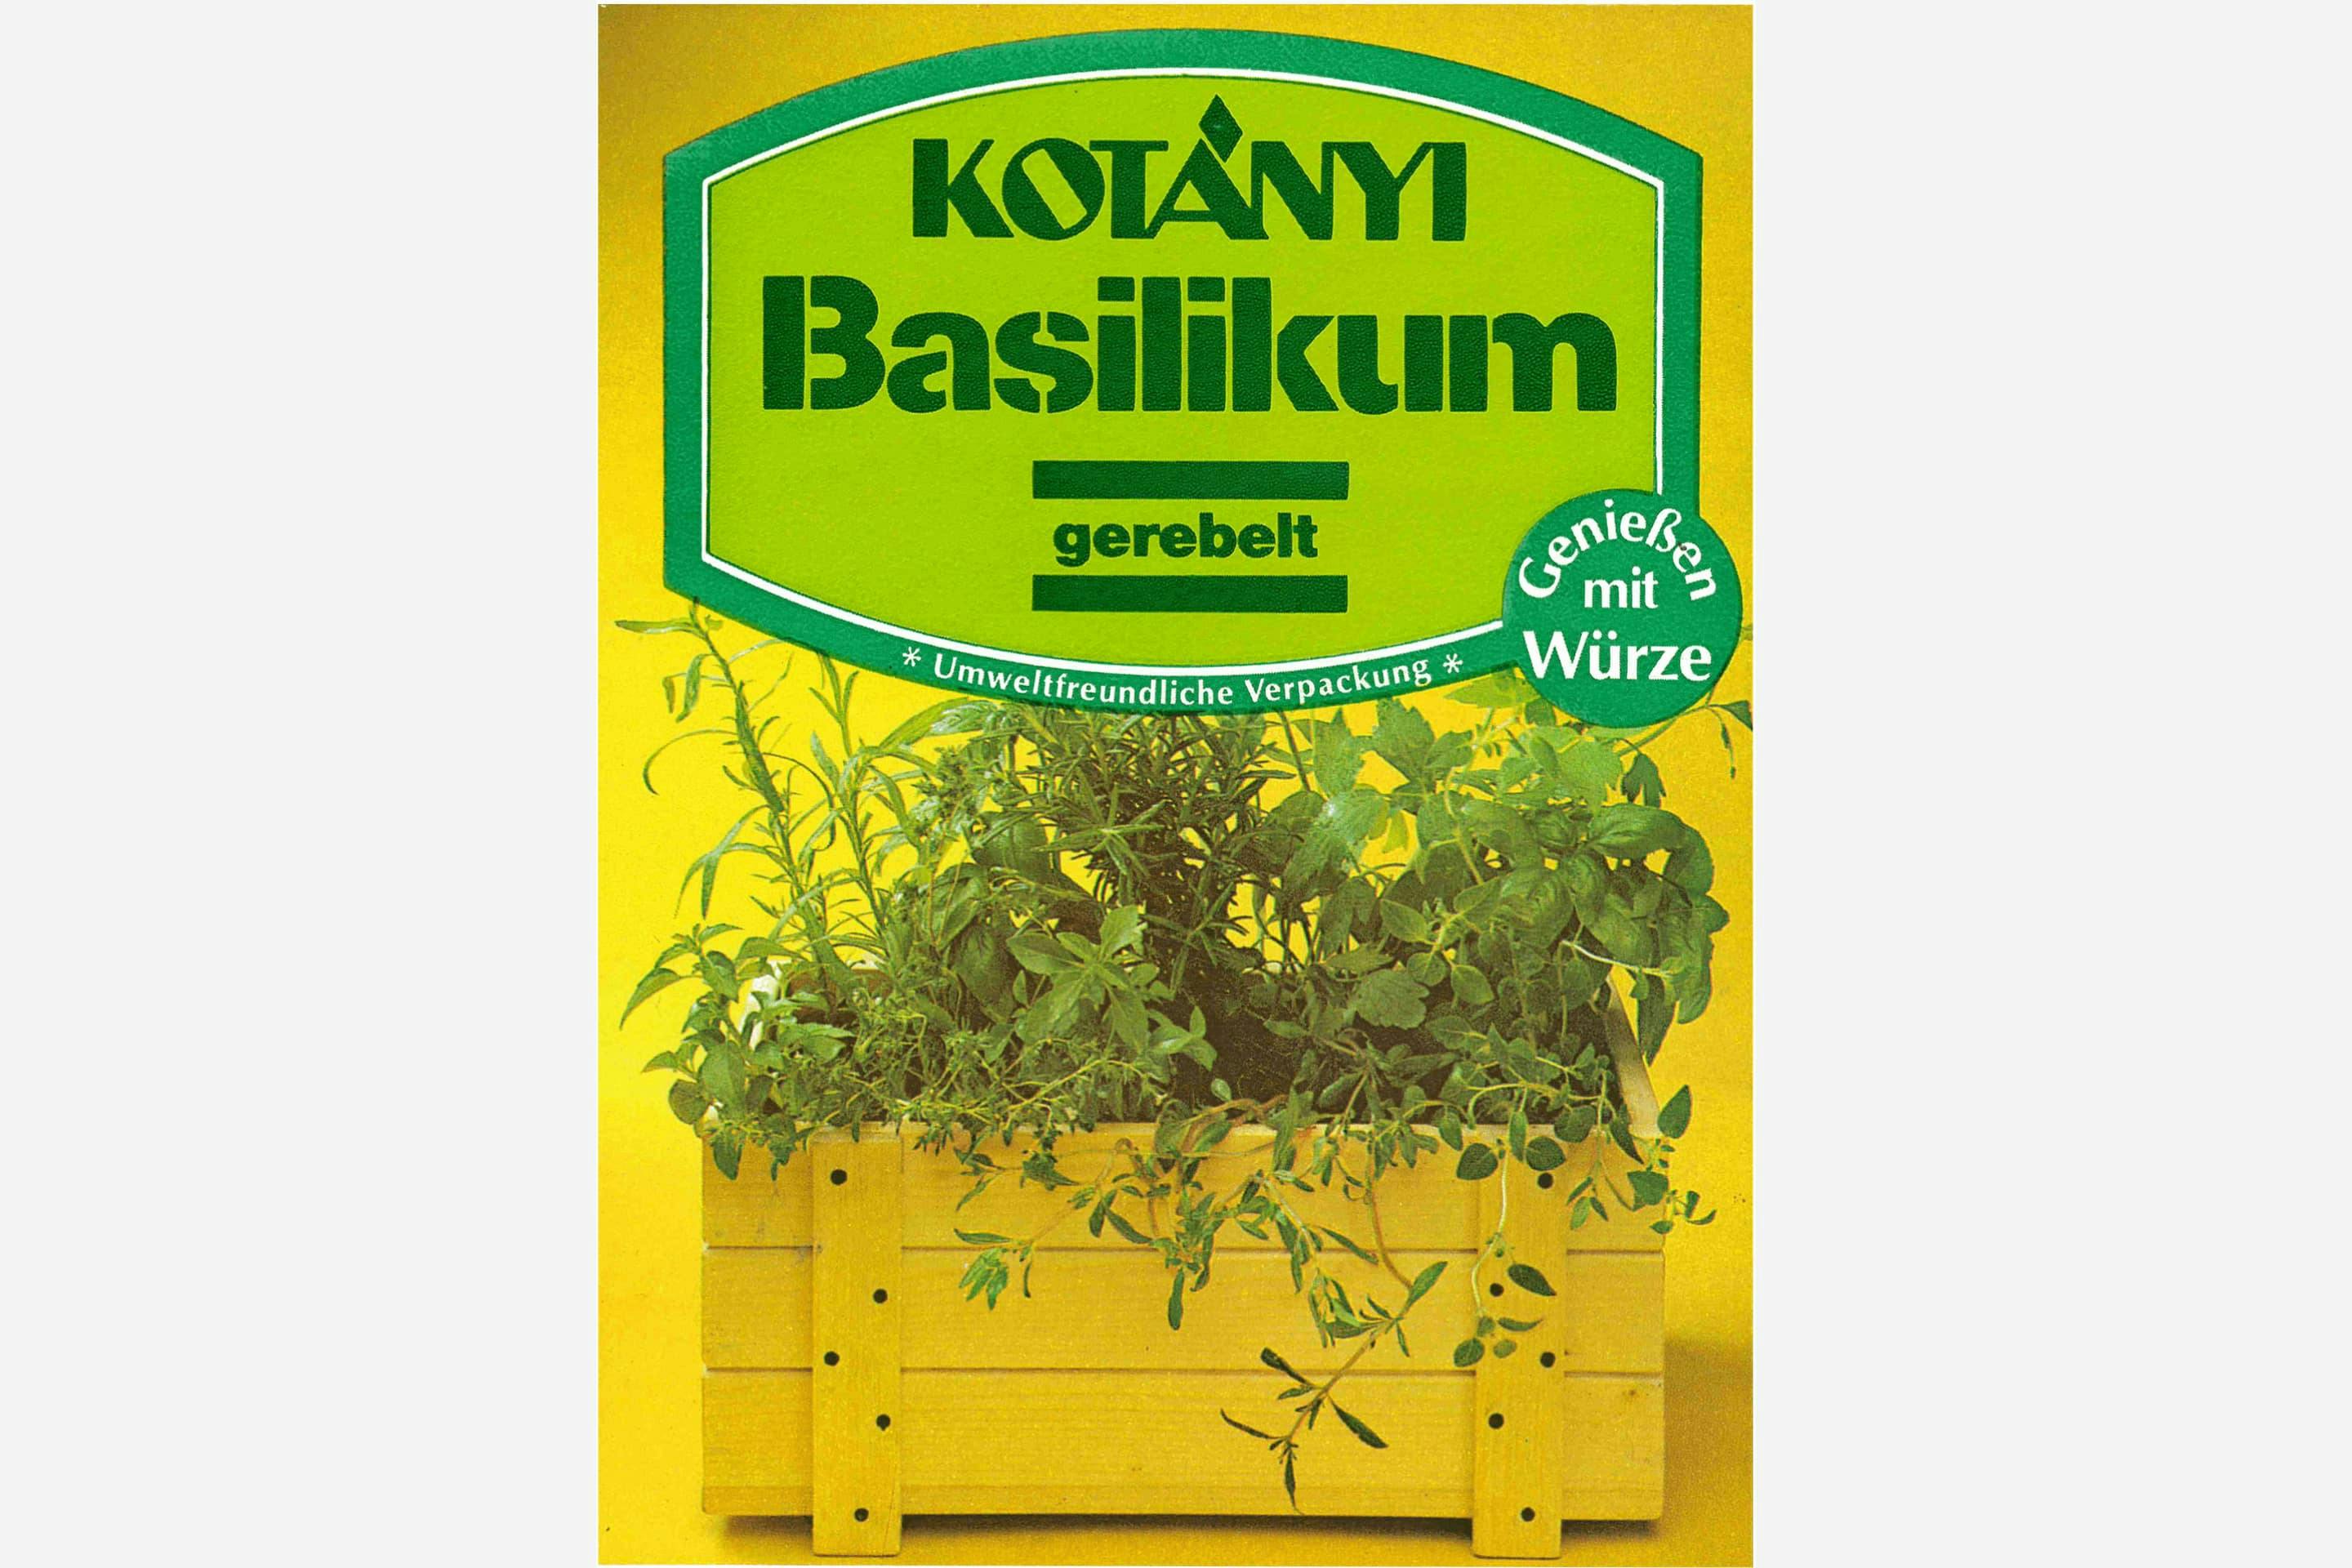 Kotányi environmentally friendly basil sachet from the 1980s.